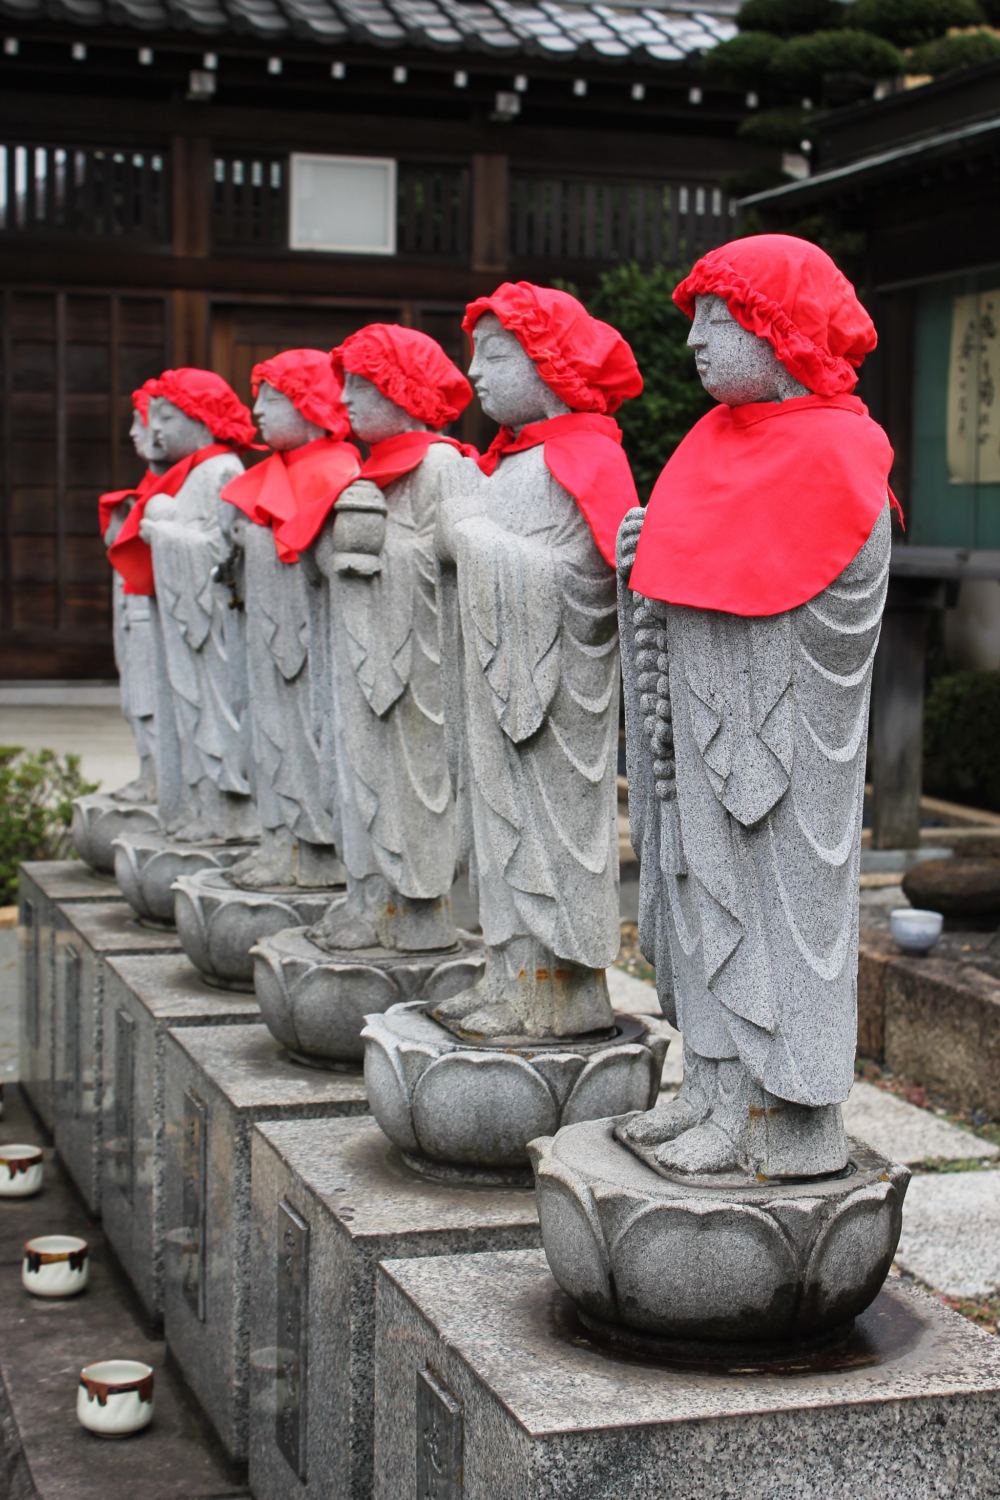 ในพุทธศาสนาของญี่ปุ่น สีแดงเป็นสัญาลักษณ์ของความมีชีวิต